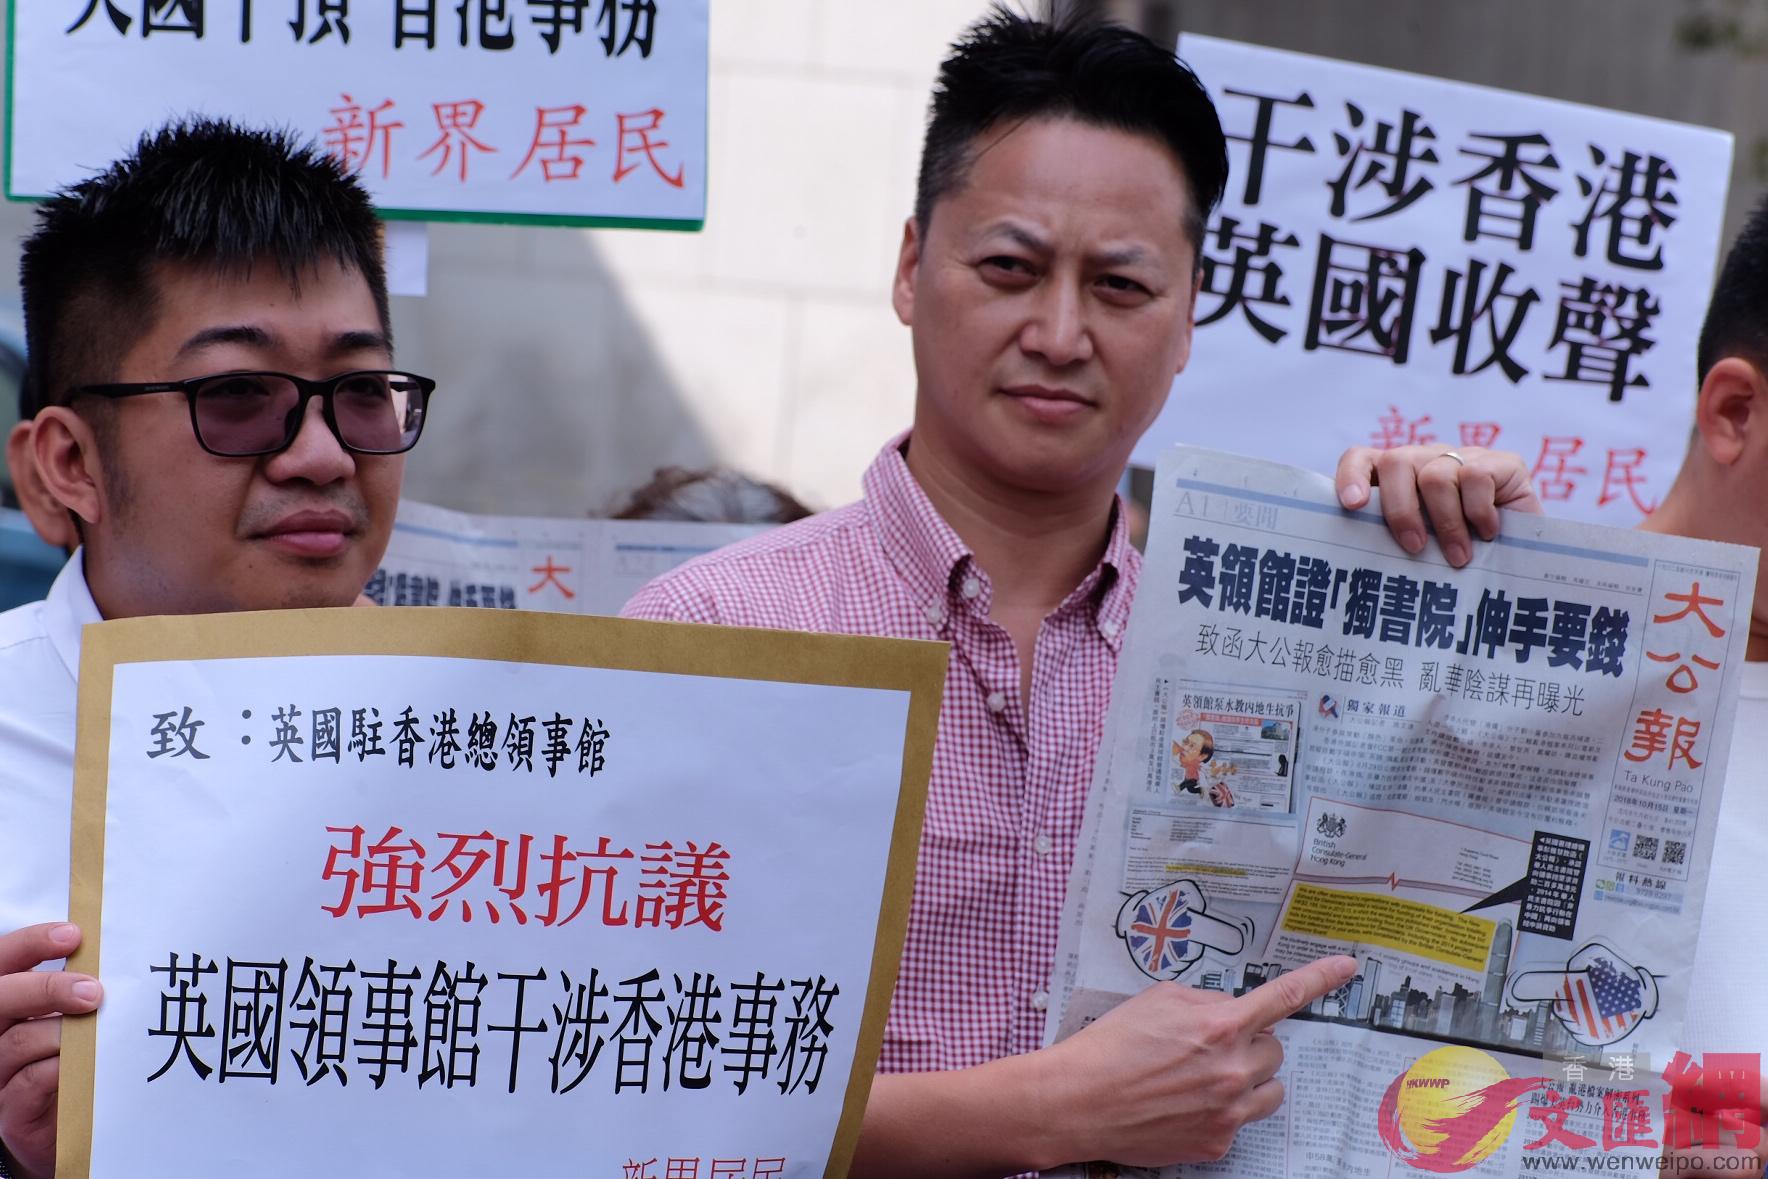 新界居民抗議英國駐港總領事館干涉香港事務